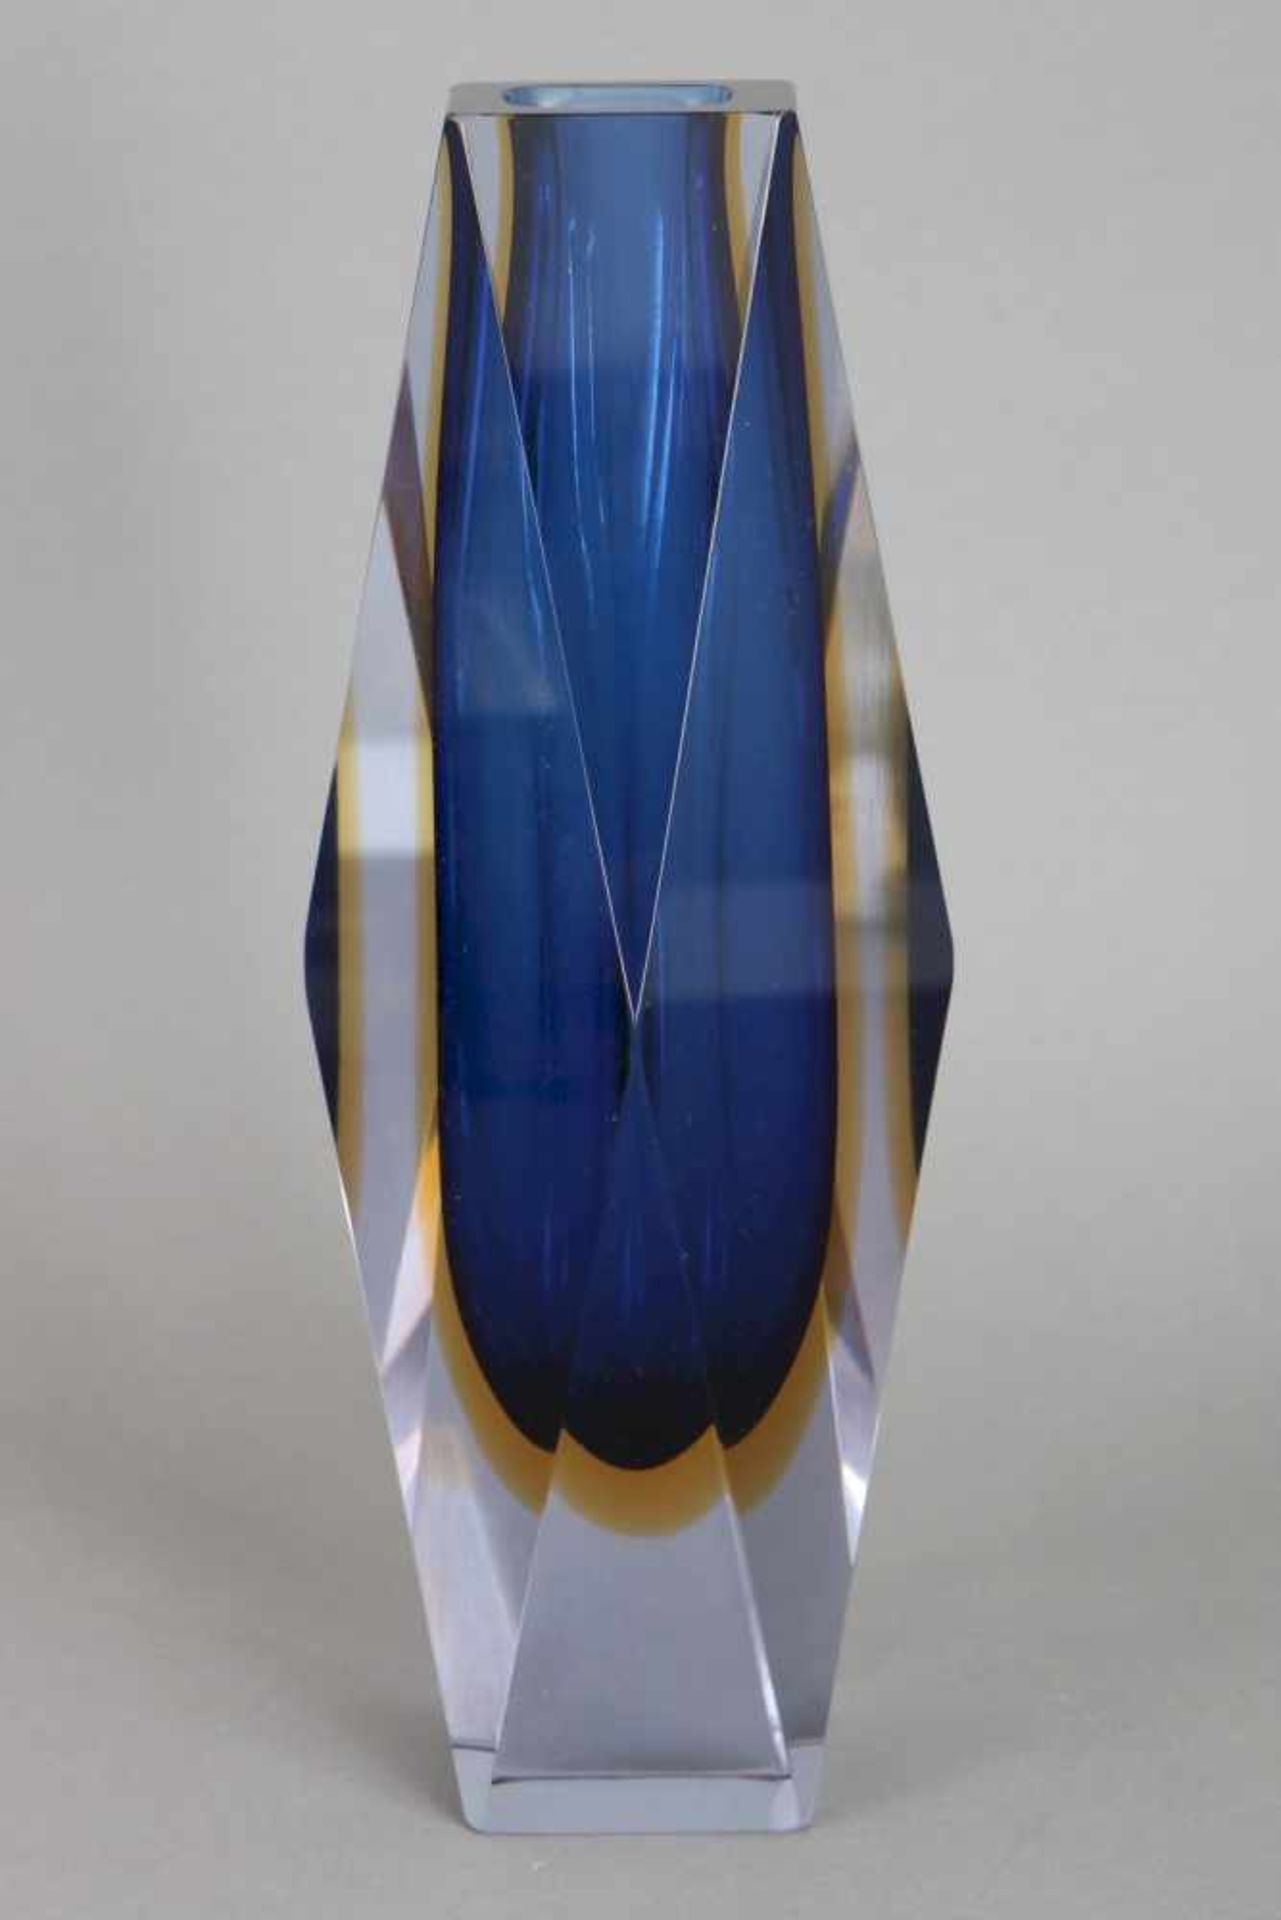 FLAVIO POLI (Murano) Sommerso Glasvase1960er Jahre, hoher, gekanteter Korpus mit blau-gelben - Bild 2 aus 2